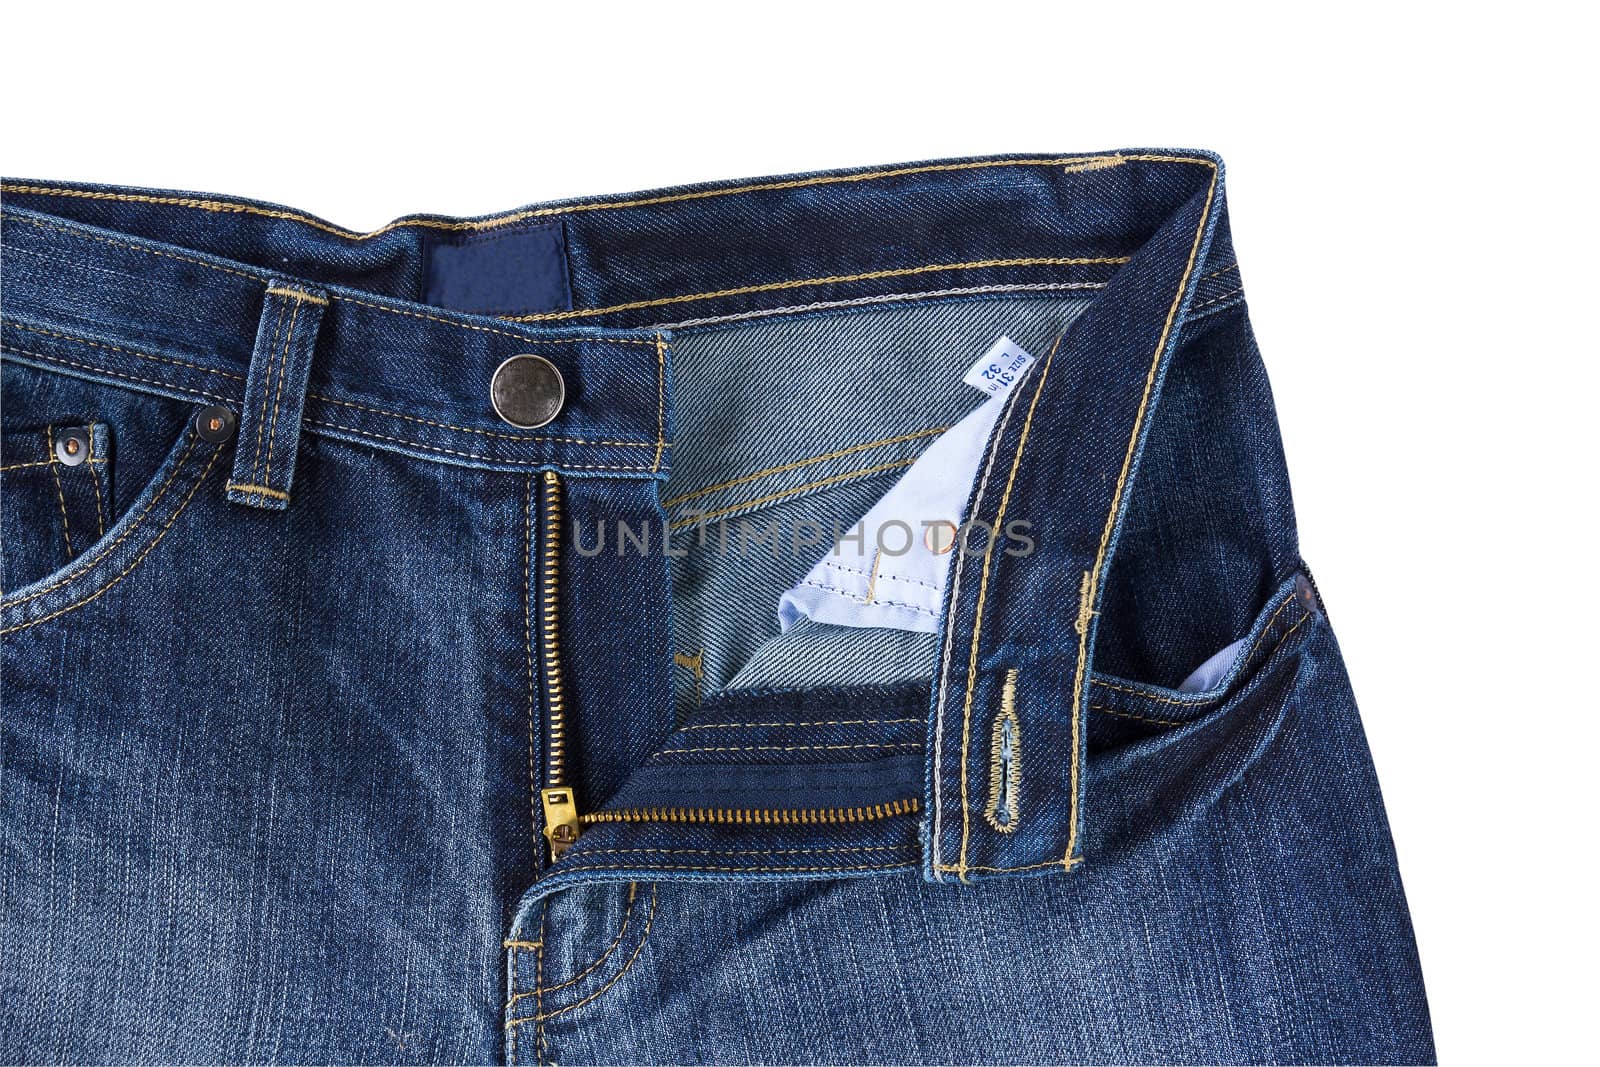 Front Blue jeans open zip by stoonn